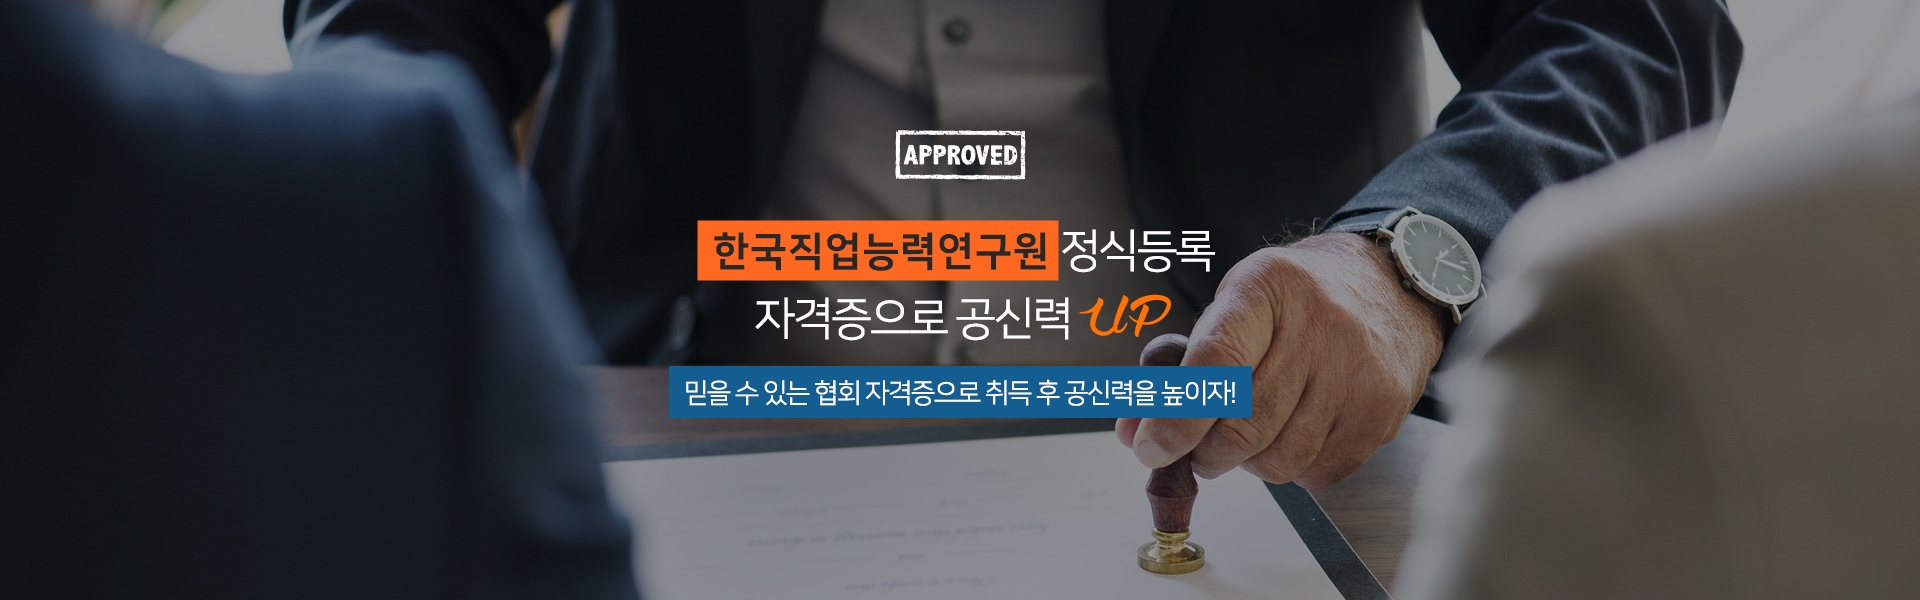 한국직업능력개발원 정식등록 자격증으로 공신력 UP 믿을 수 있는 협회 자격증으로 취득 후 공신력을 높이자!